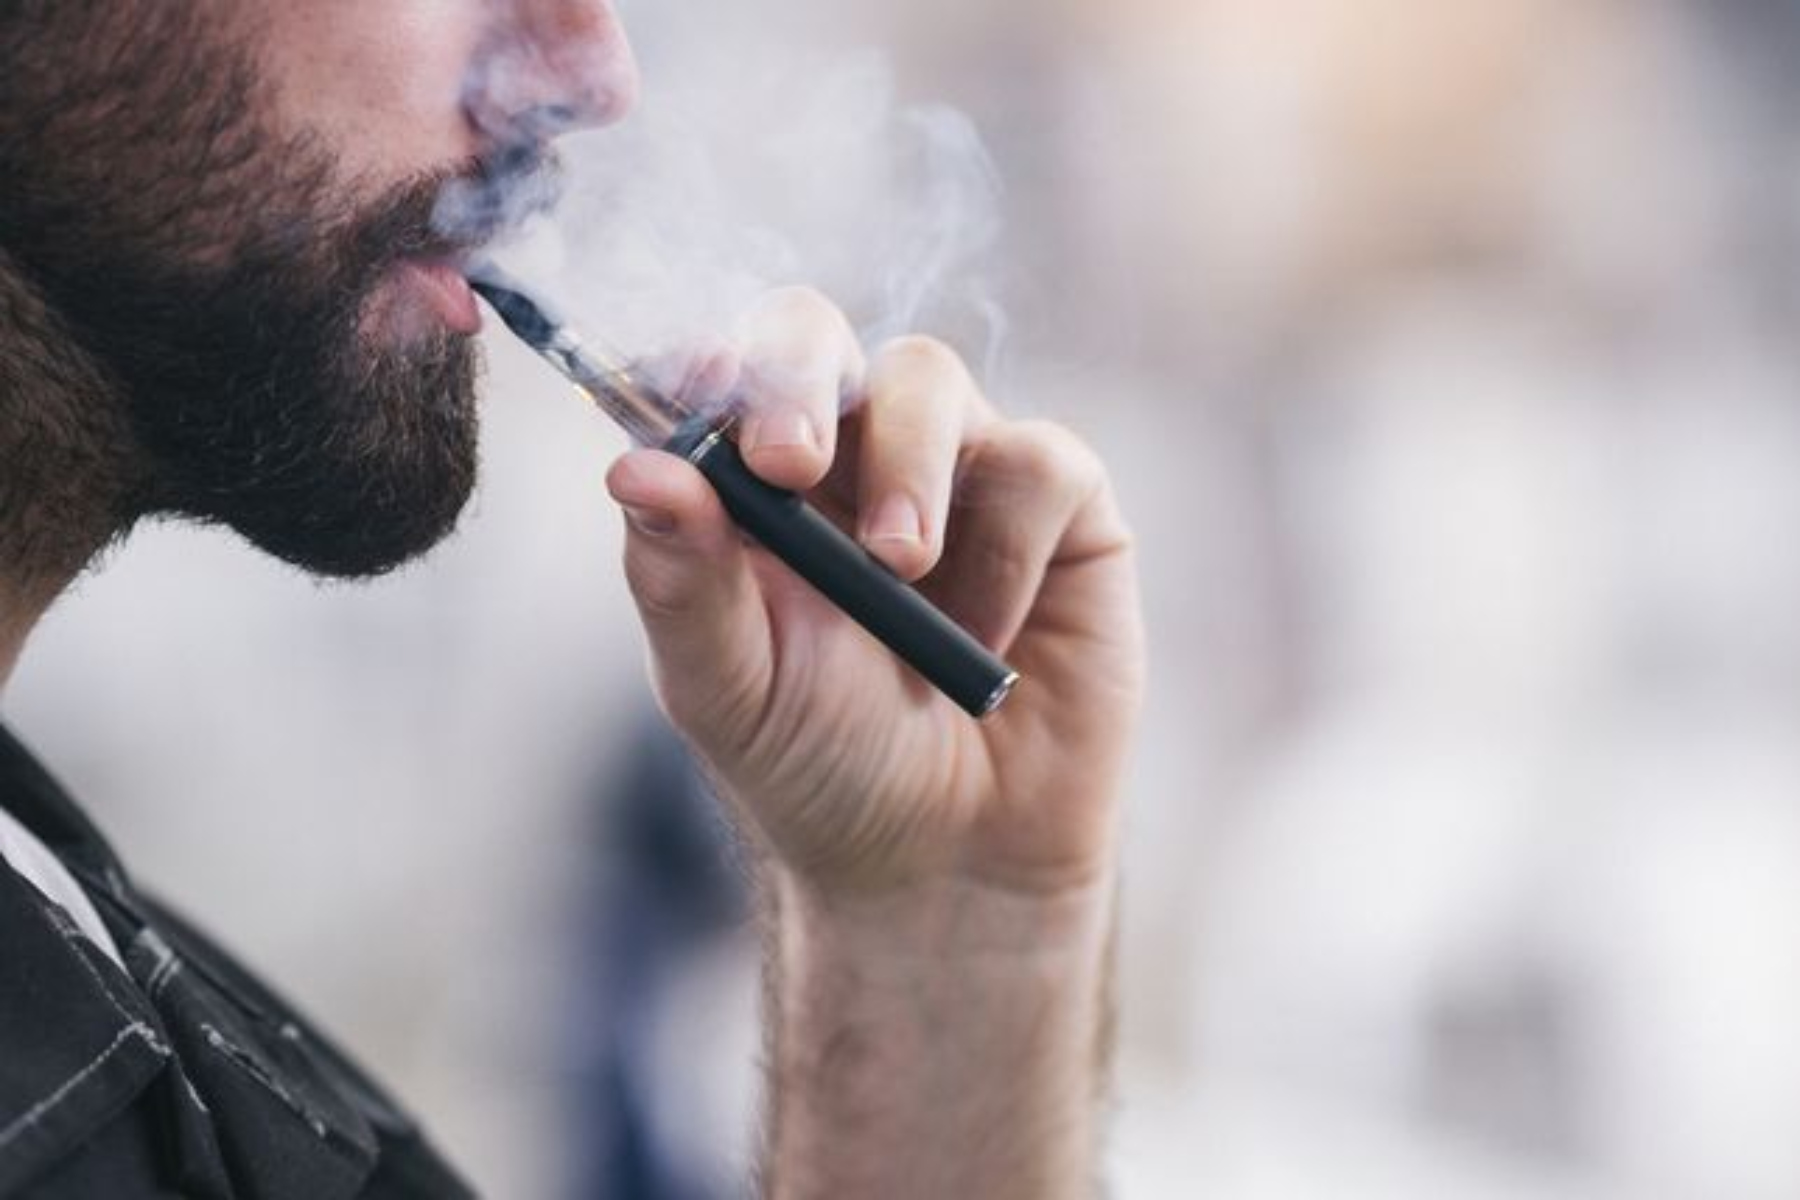 Ηλεκτρονικό τσιγάρο: Το άτμισμα με μενθόλη προκαλεί βλάβη στους πνεύμονες